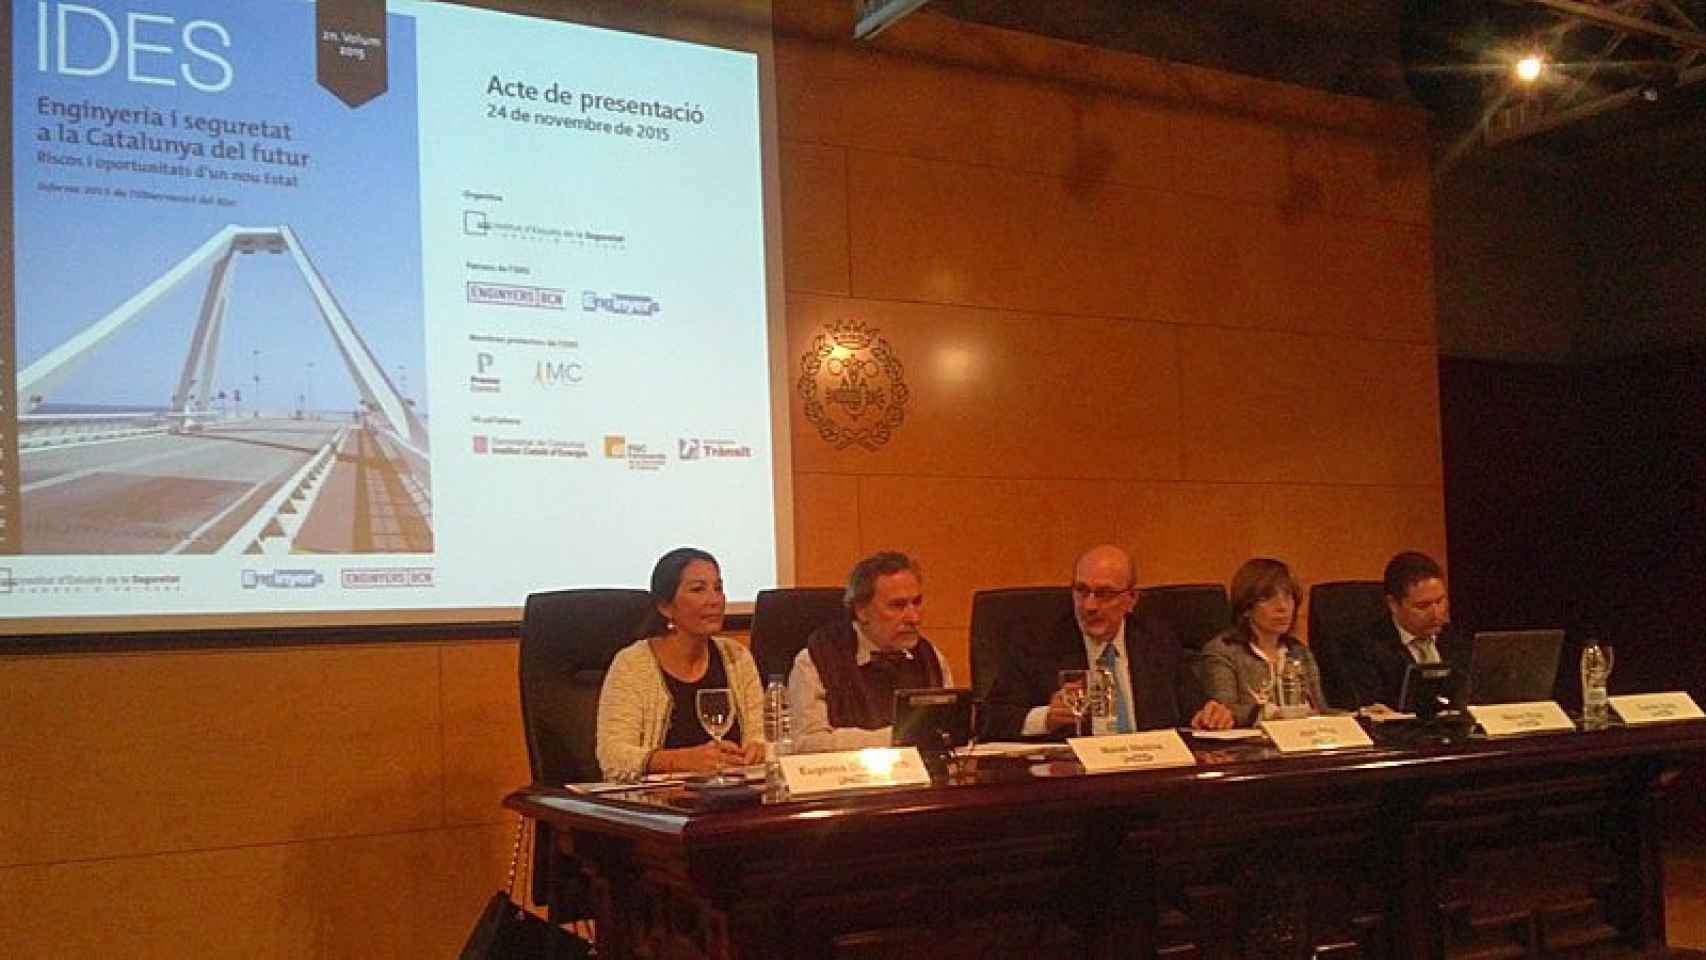 Eugenia Doménech (Servei Català de Trànsit), Manel Medina (UPC), Joan Ribó (Observatorio del Riesgo), Mercè Rius (Instituto Catalán de Energía) y Carles Cots (FGC), durante la presentación del informe